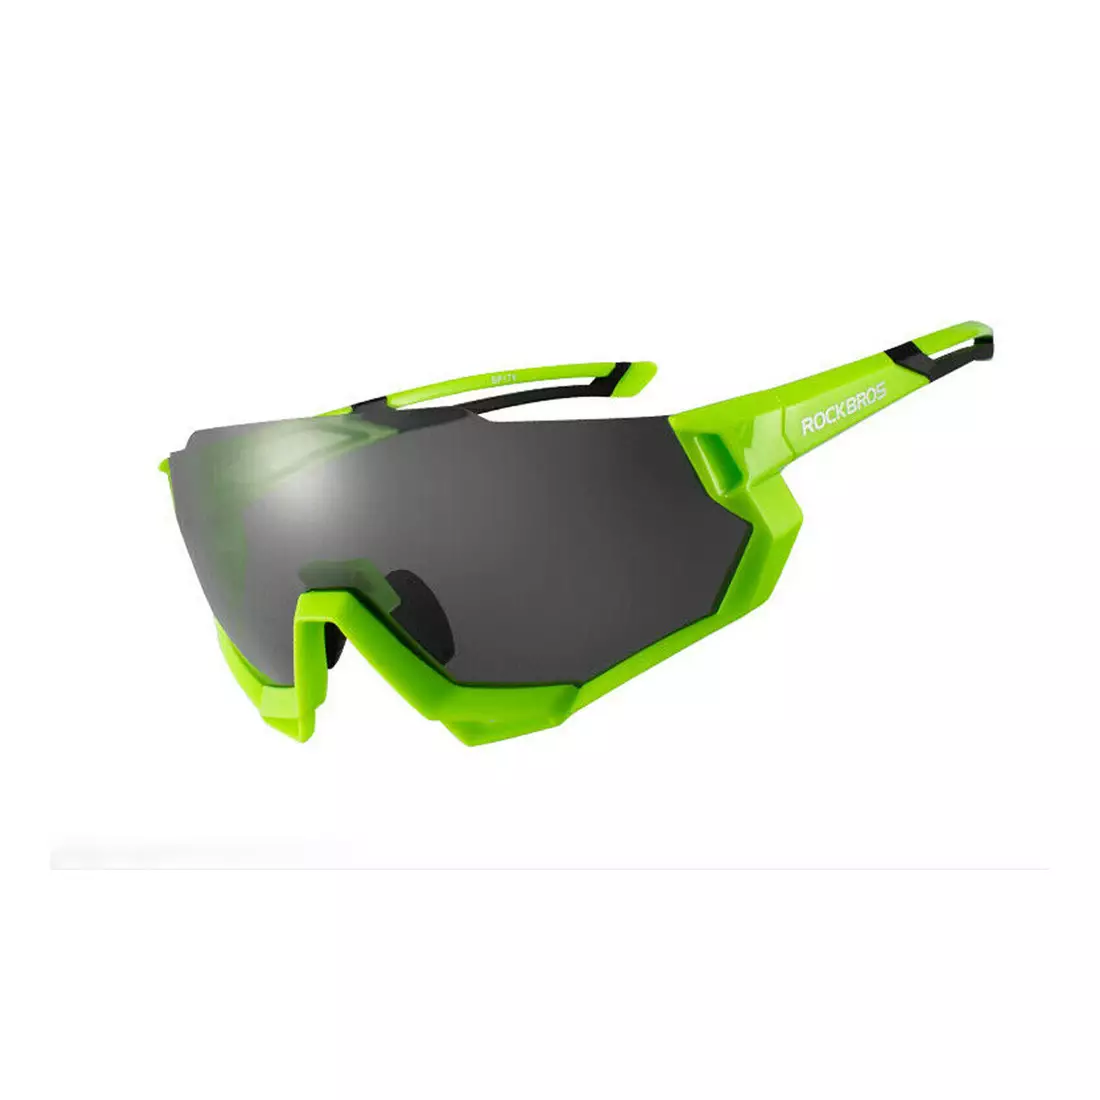 Rockbros 10133 Fahrrad-/Sportbrille mit polarisierten 5 Wechselgläsern grün